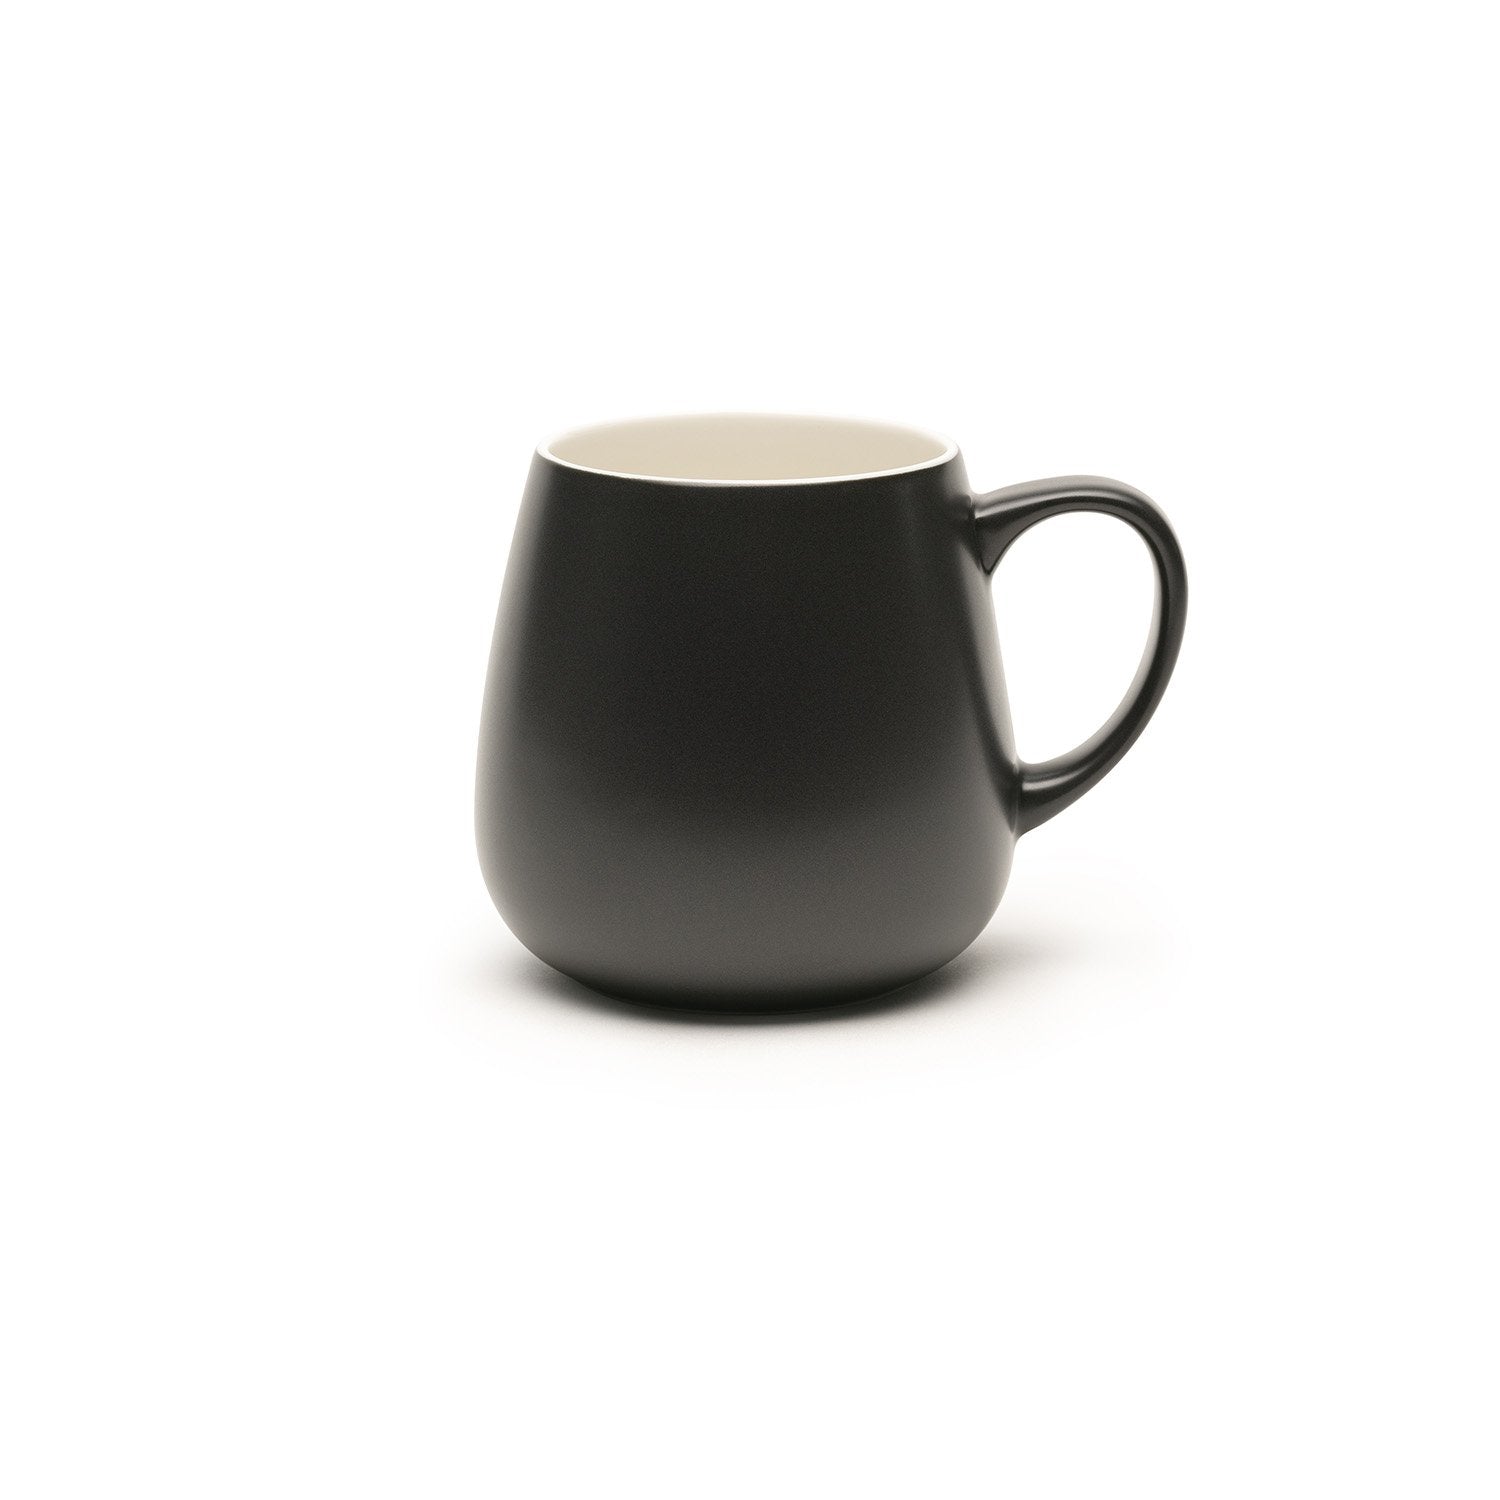 Large black mug